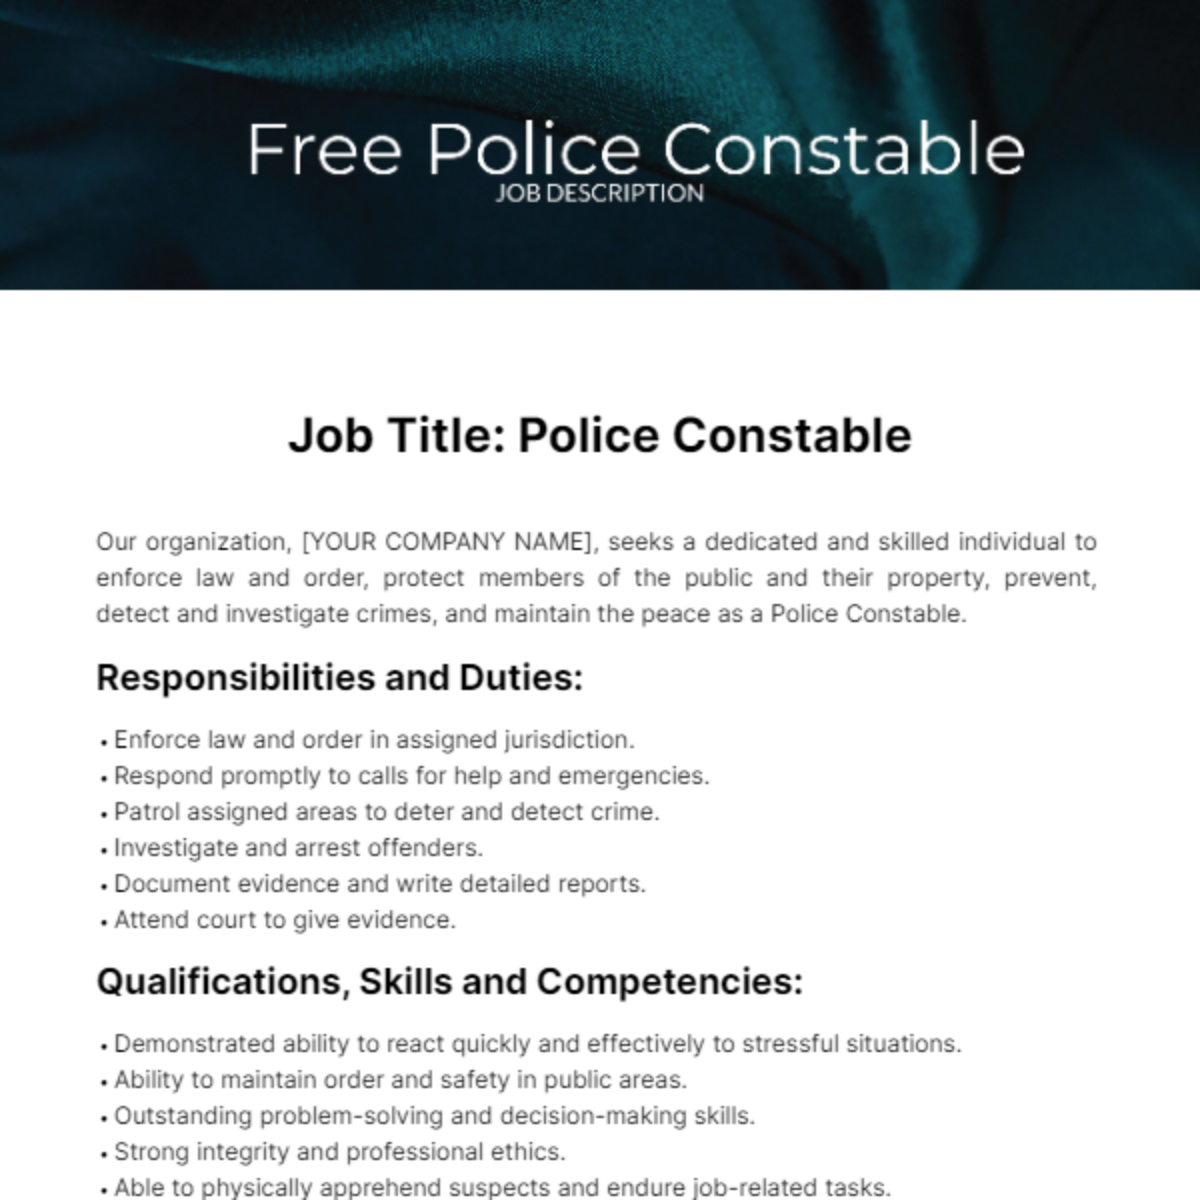 Police Constable Job Description Template